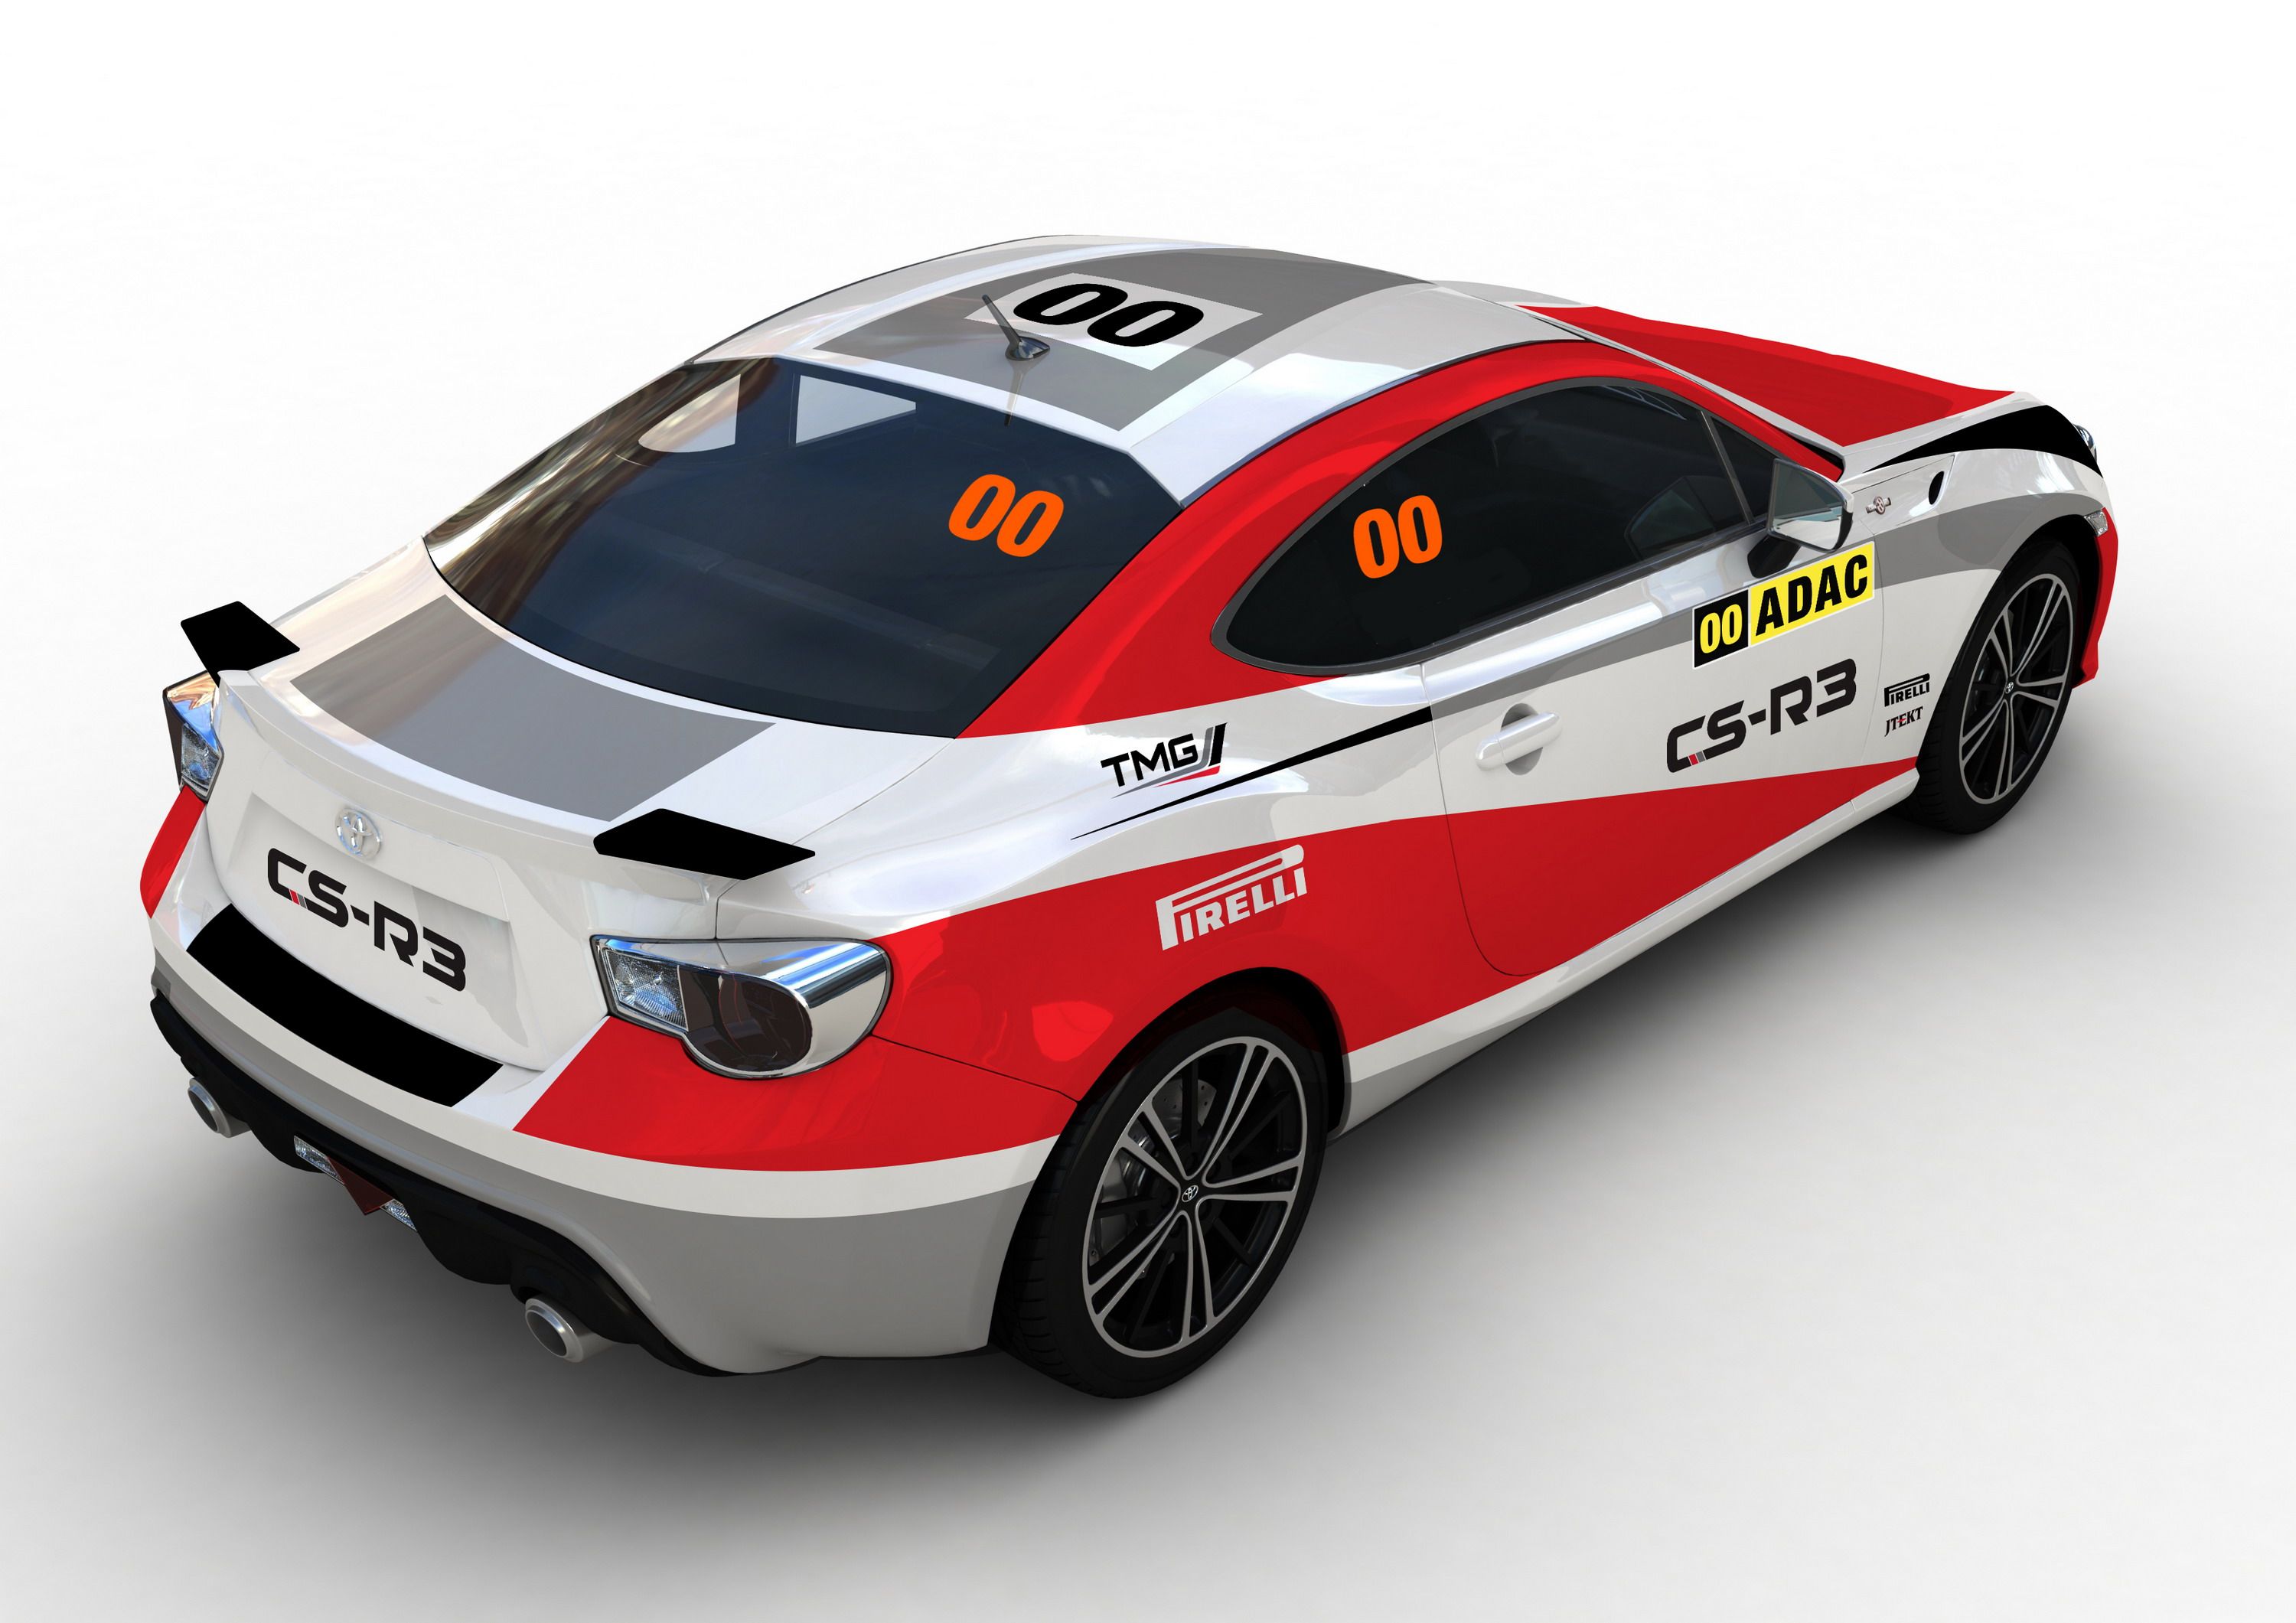 2015 Toyota GT86 CS-R3 Rally Car